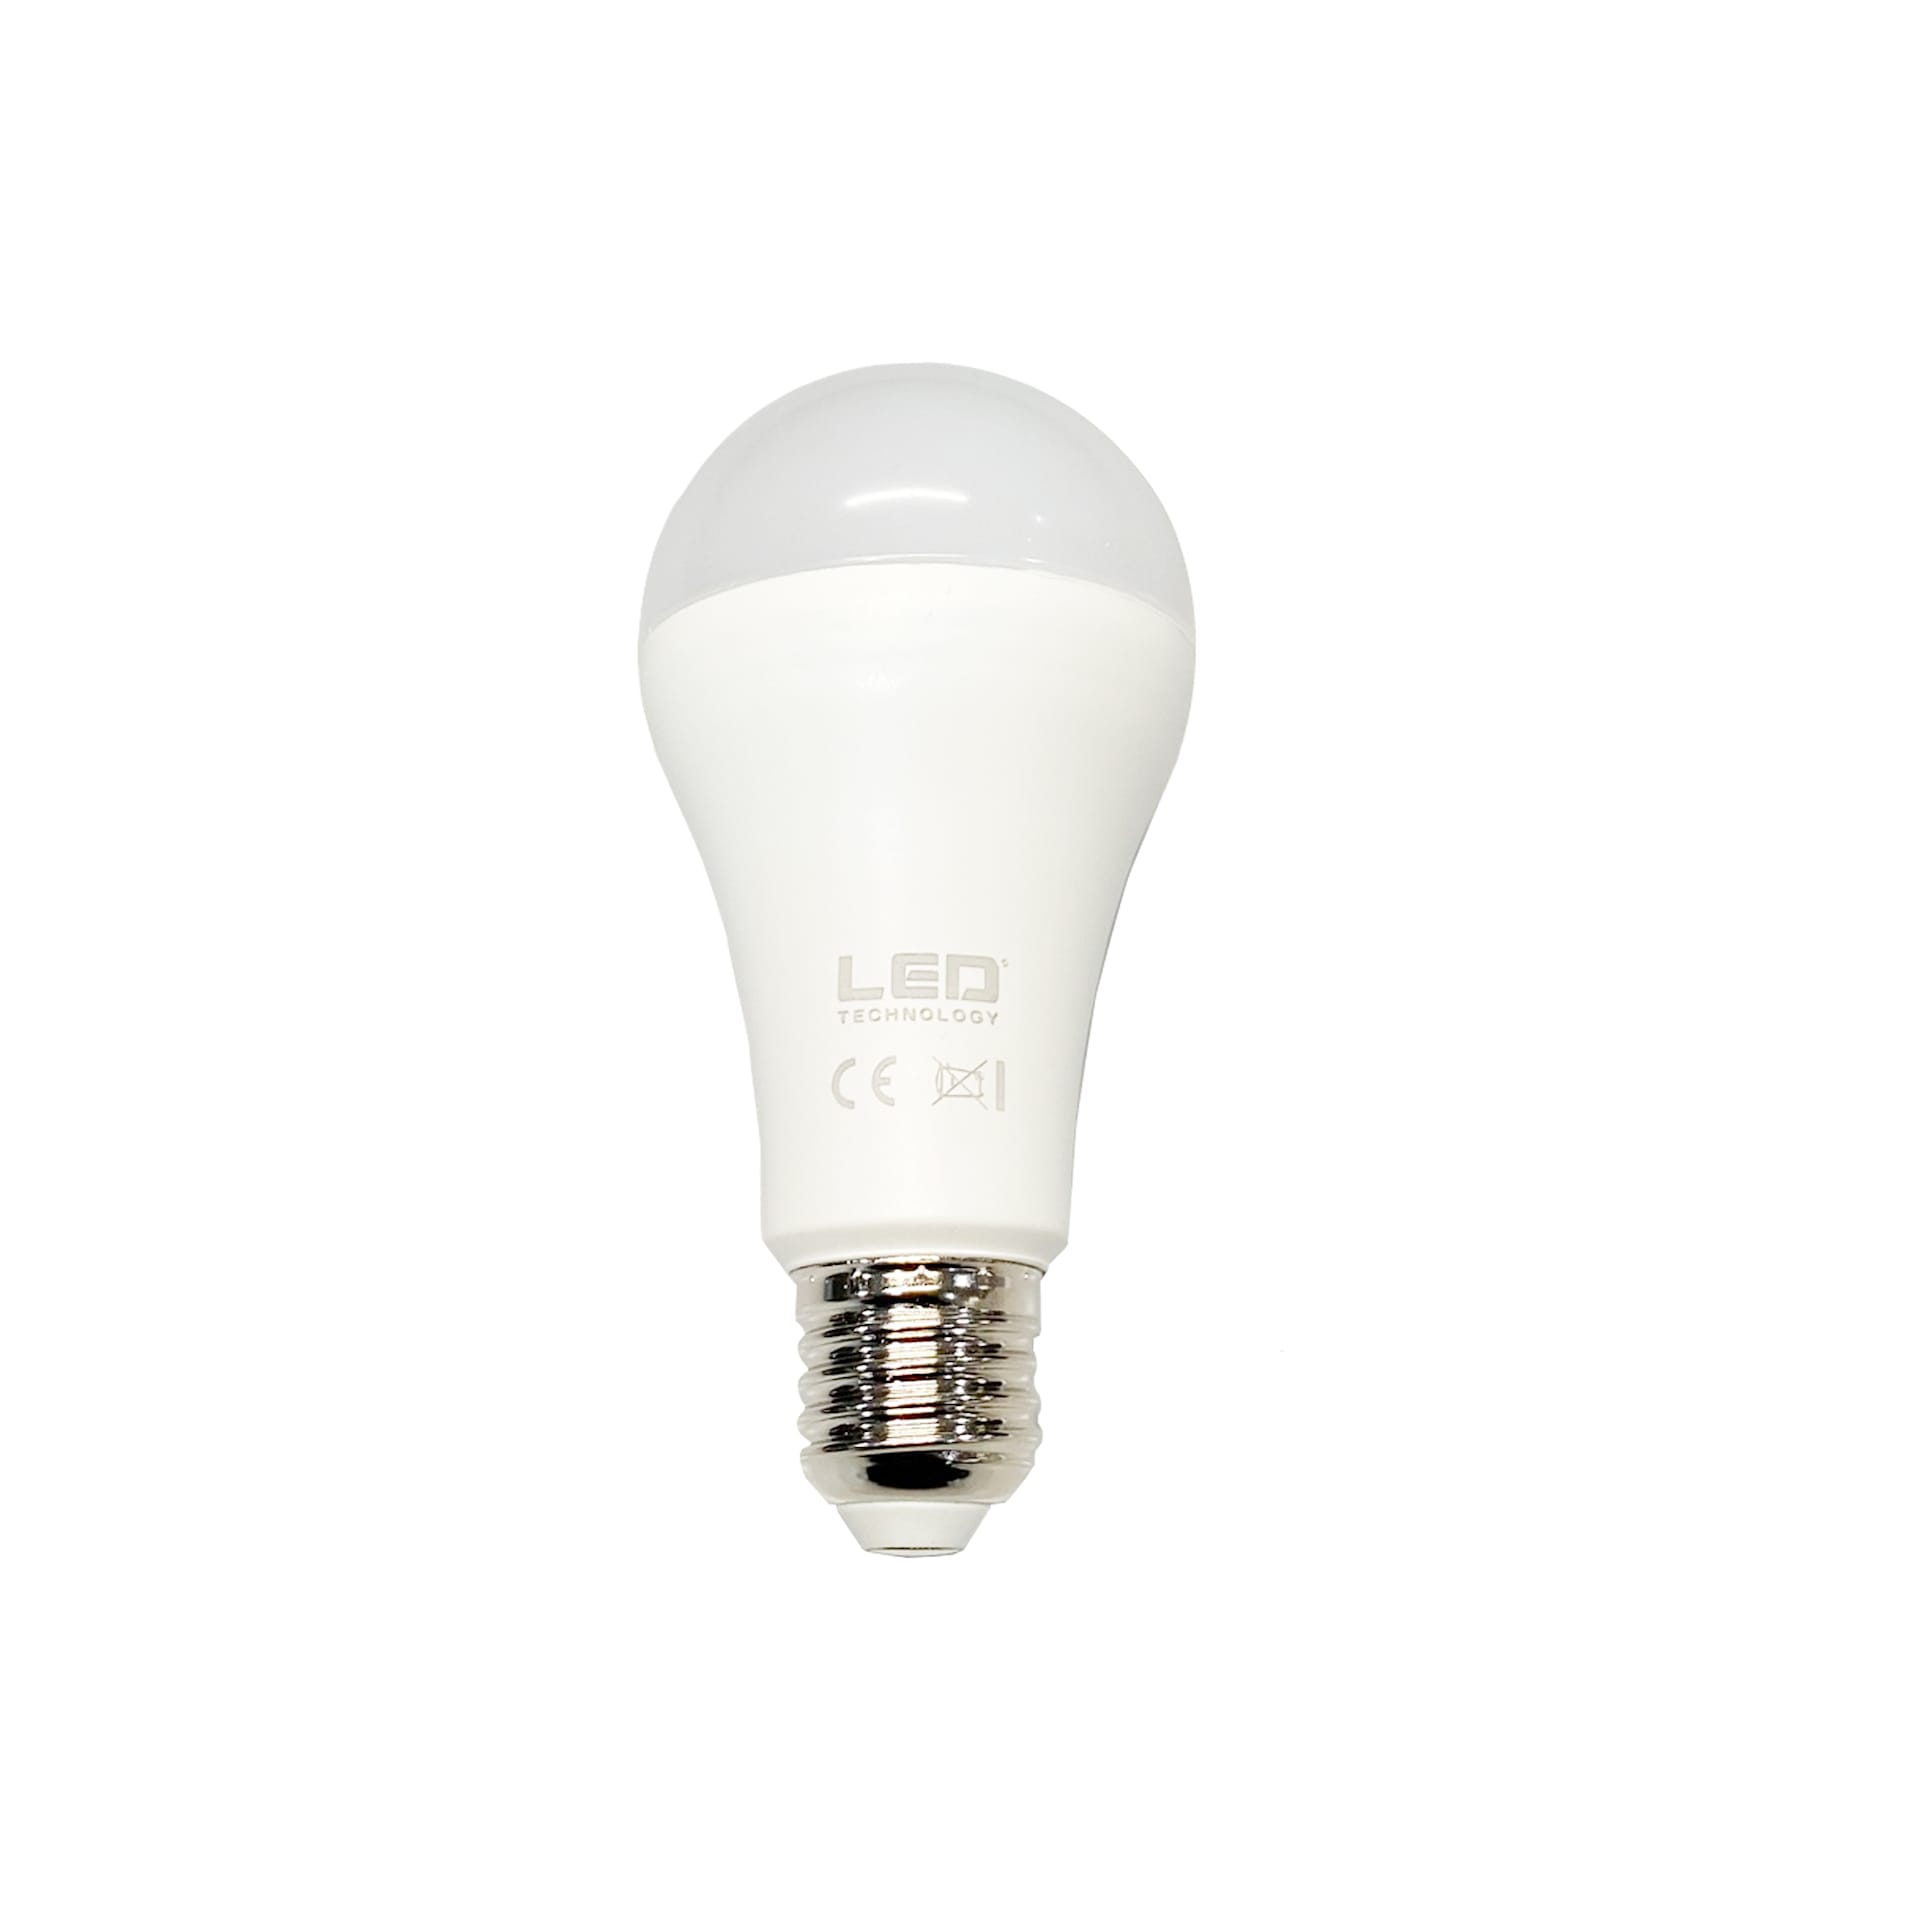 Light Source 21W E27 LED - Flos - NO GA